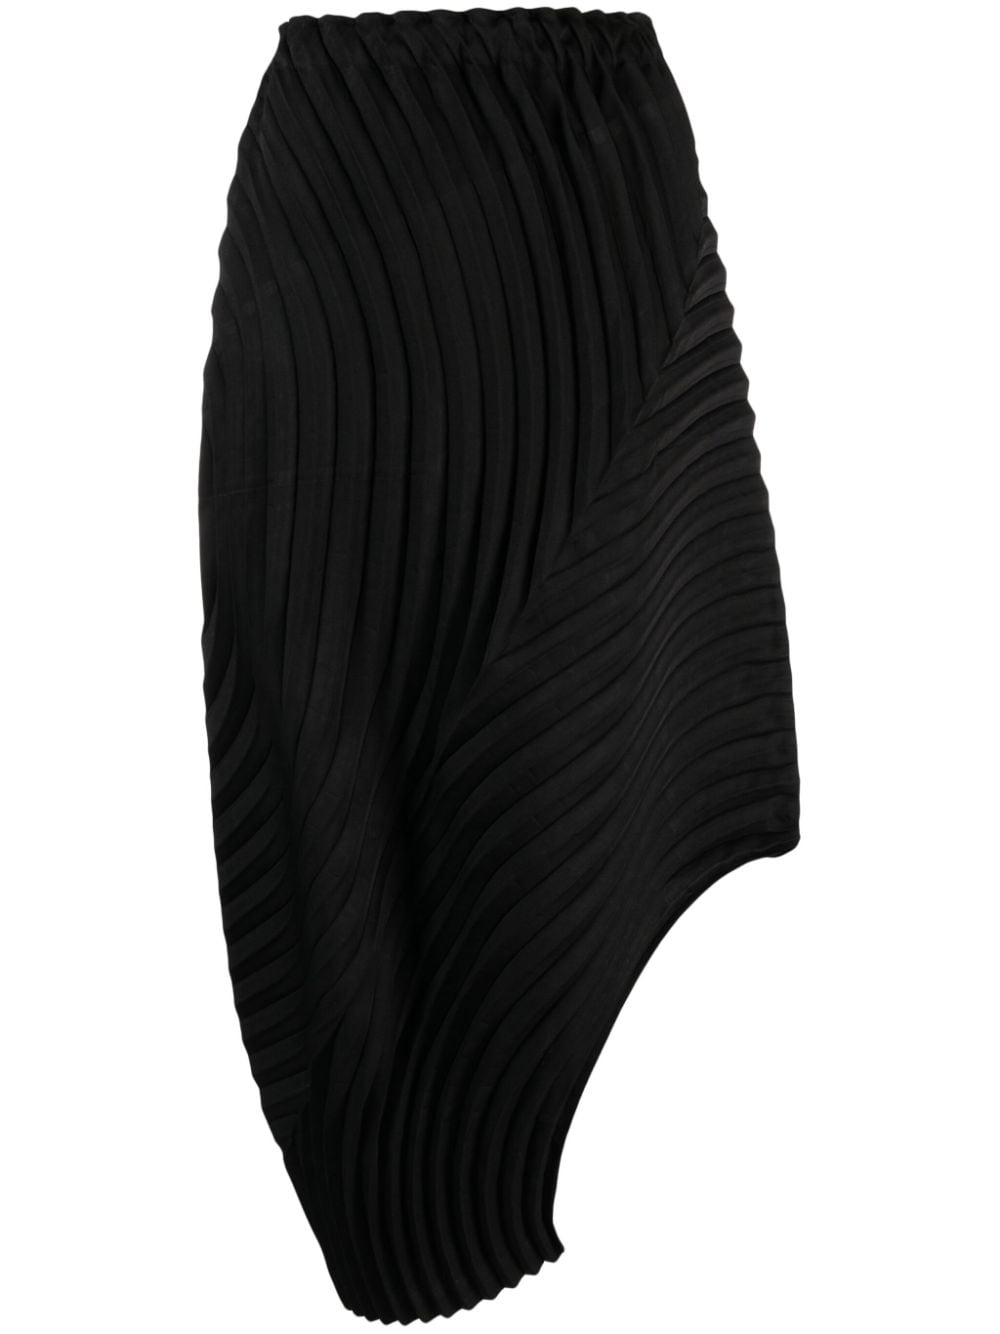 high-waist pleated asymmetric skirt - 1